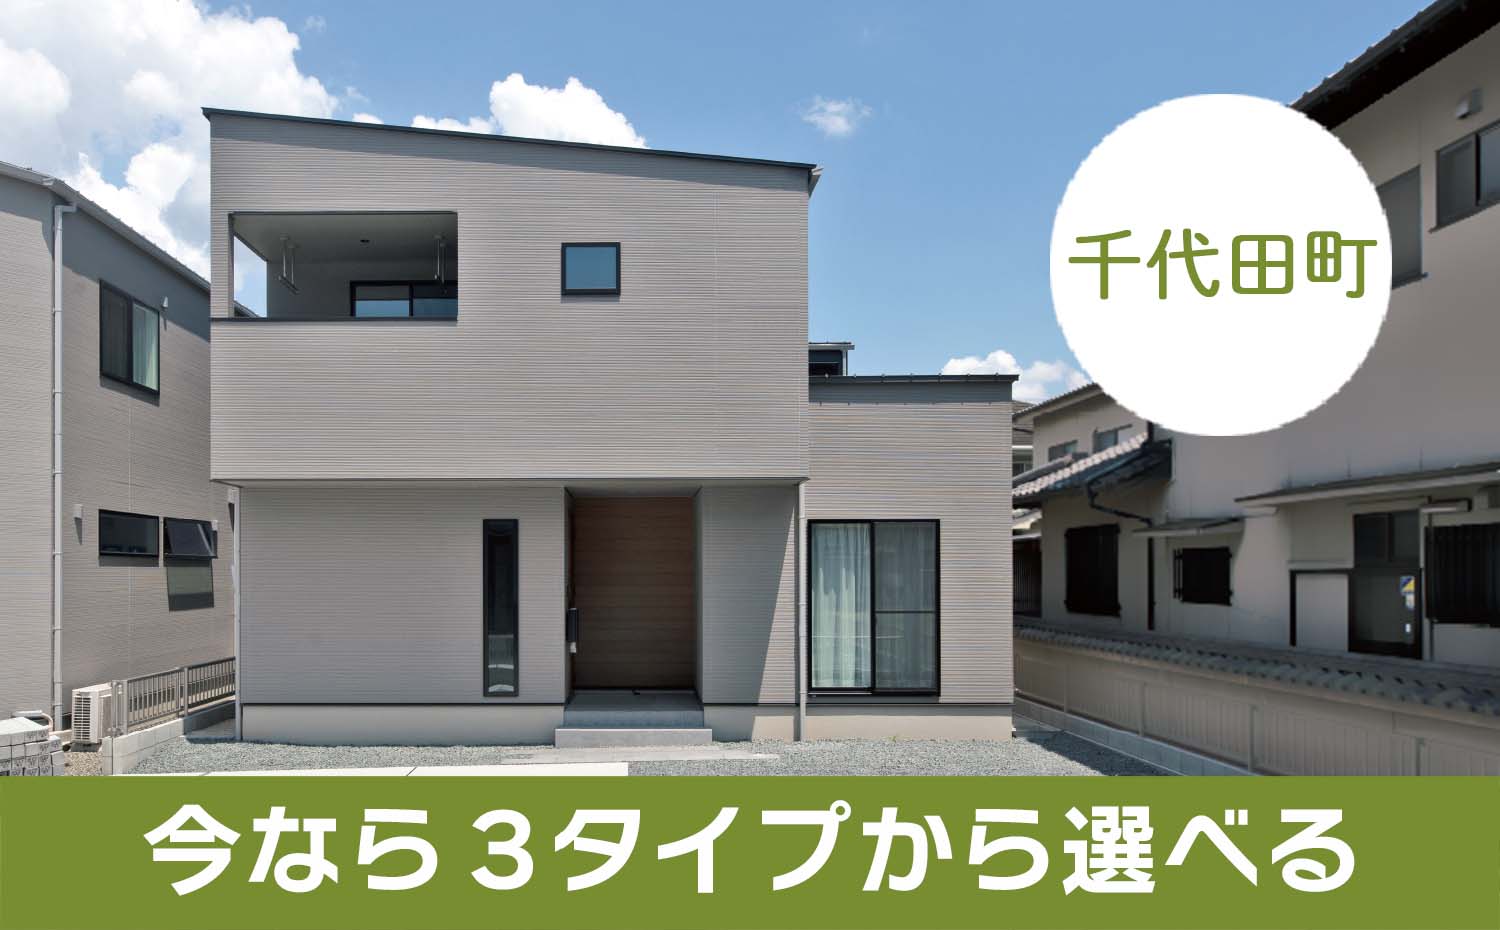 【千代田町】3,500万円内で決める 3棟モデルハウス販売中